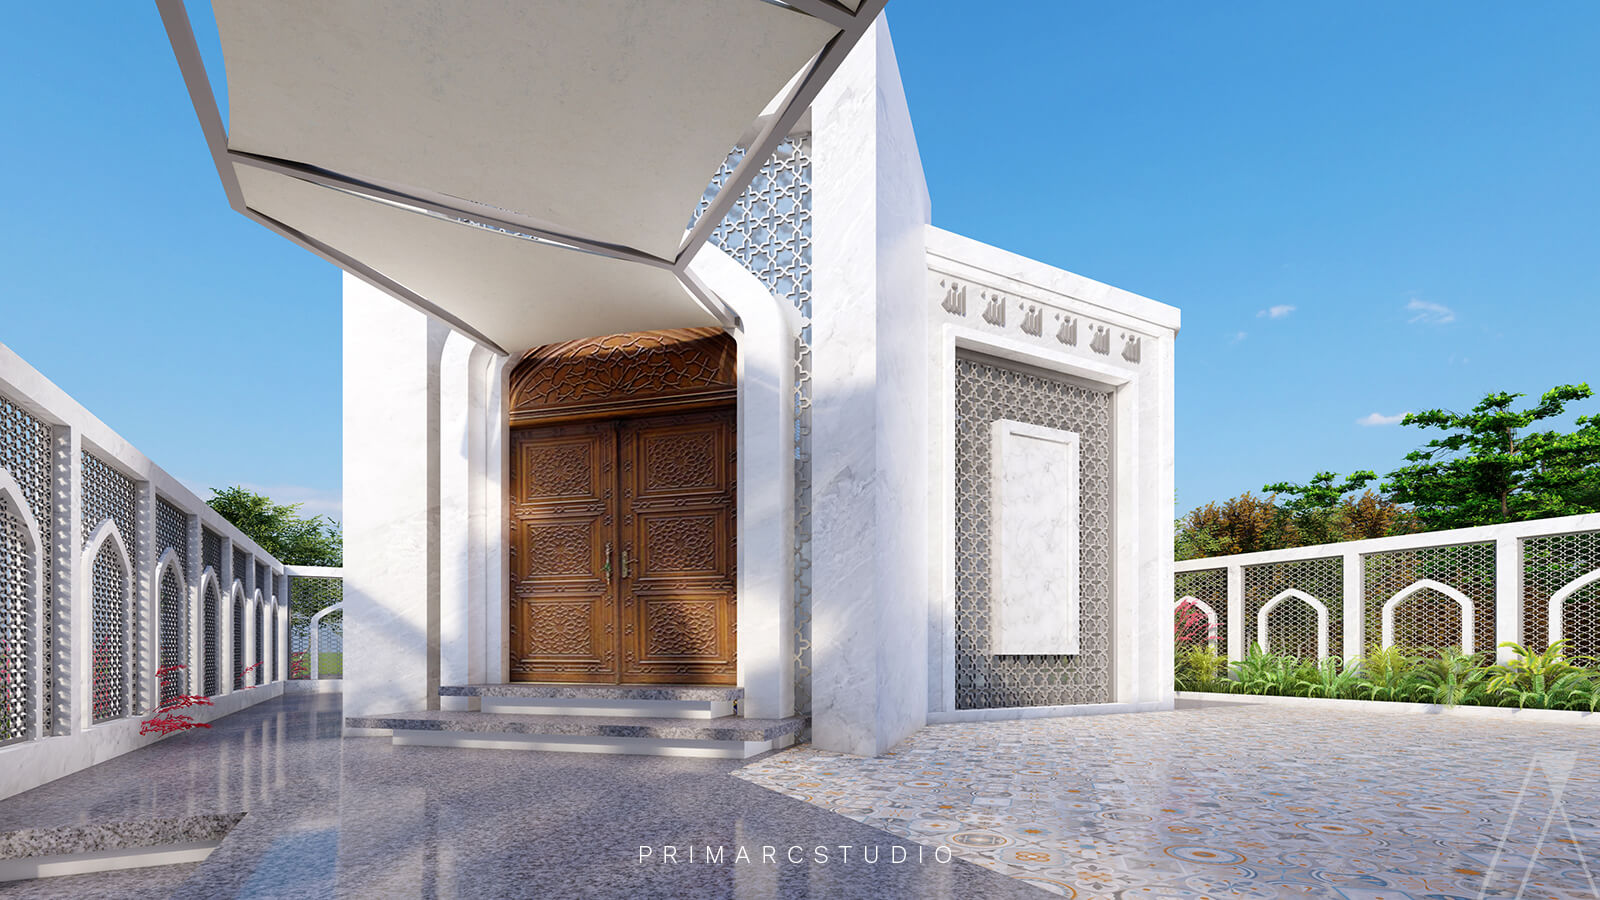 Entrance design of masjid